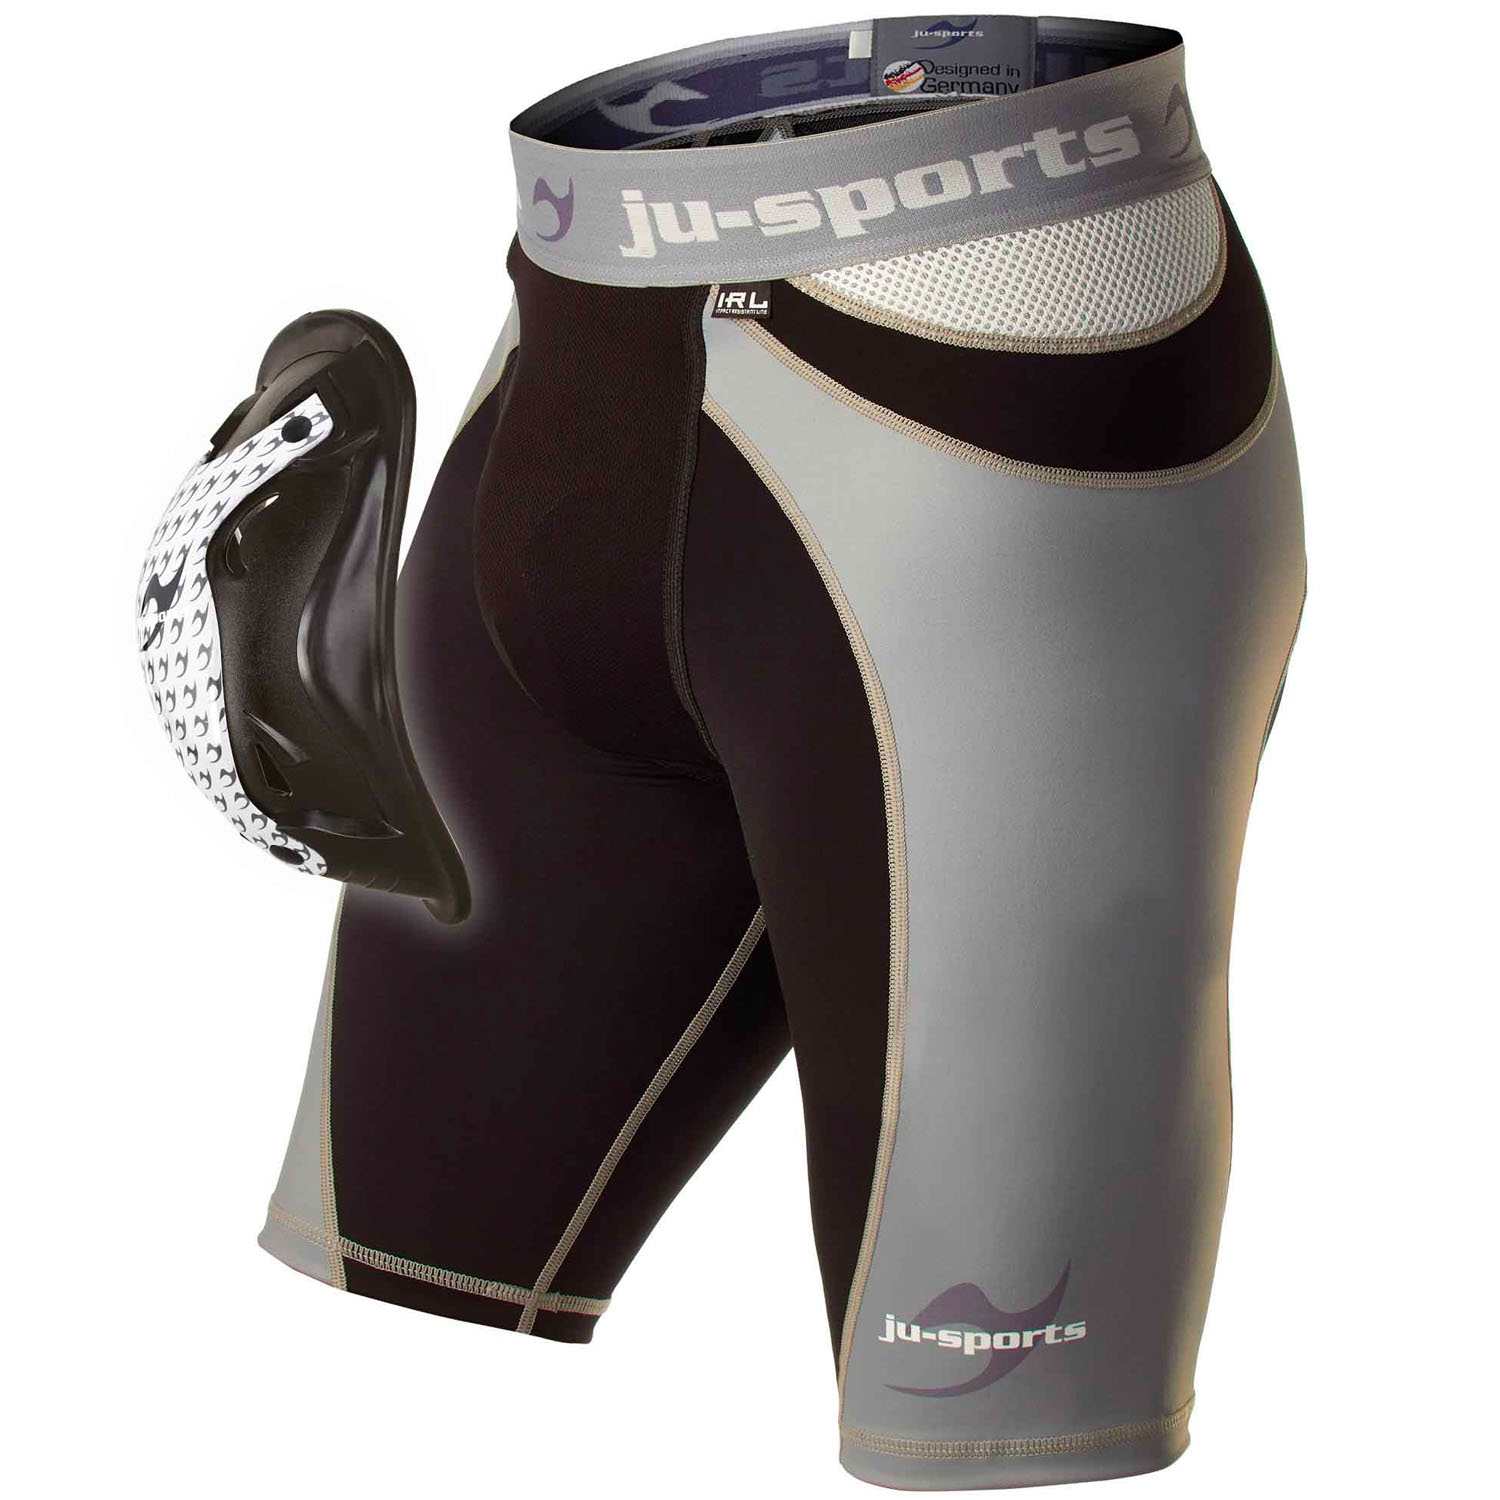 Ju-Sports Compression Shorts, Pro Line Motion Pro Flexcup L